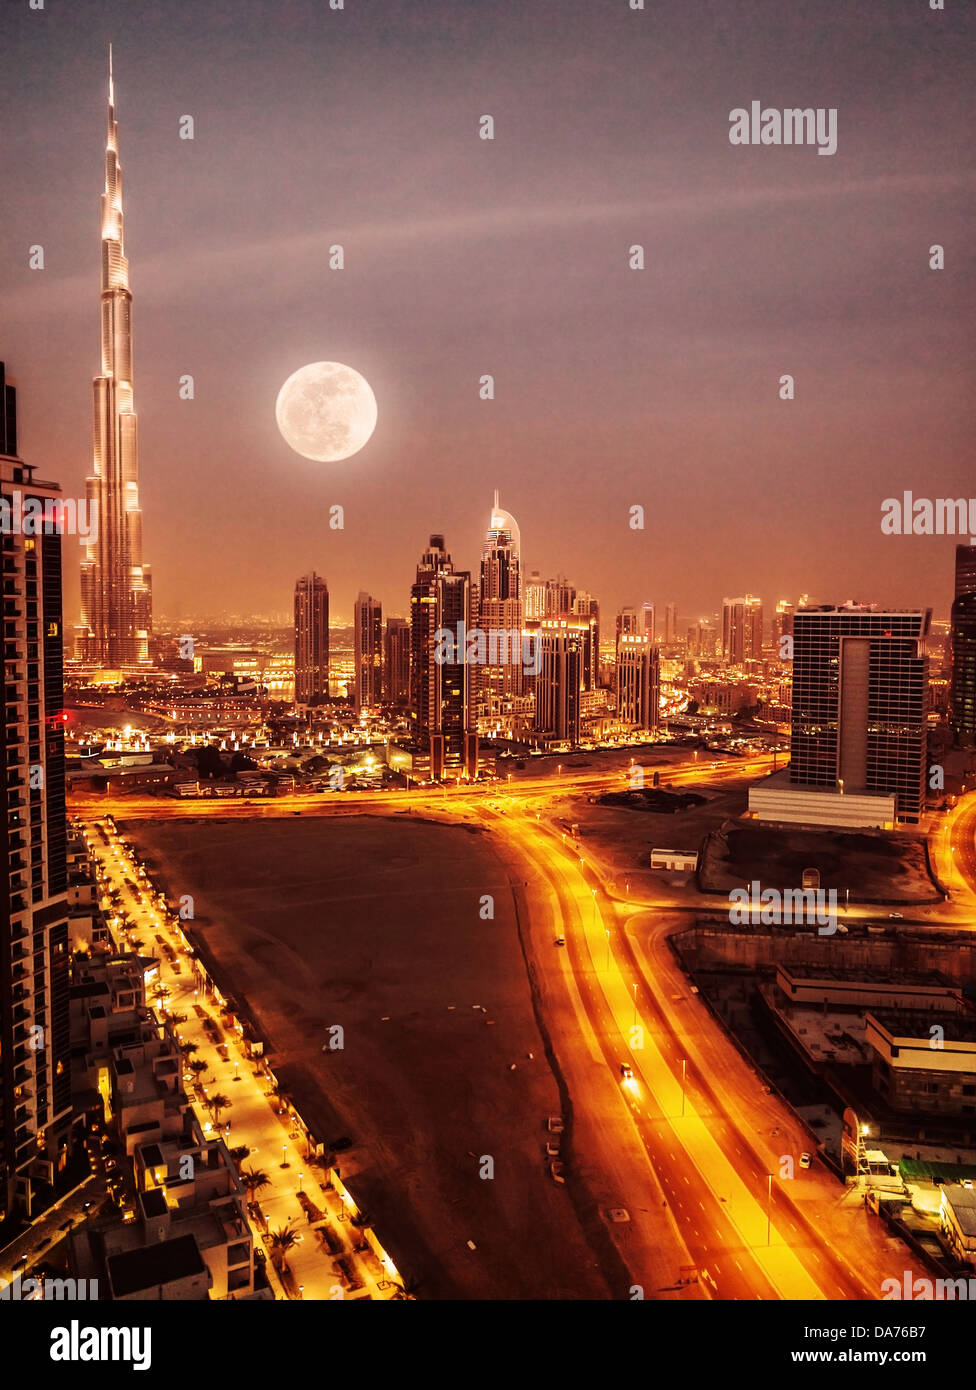 Dubai in chiaro di luna, UAE, luna piena, notte scape nel centro cittadino di Dubai, moderna architettura araba, medio oriente, città illuminata Foto Stock